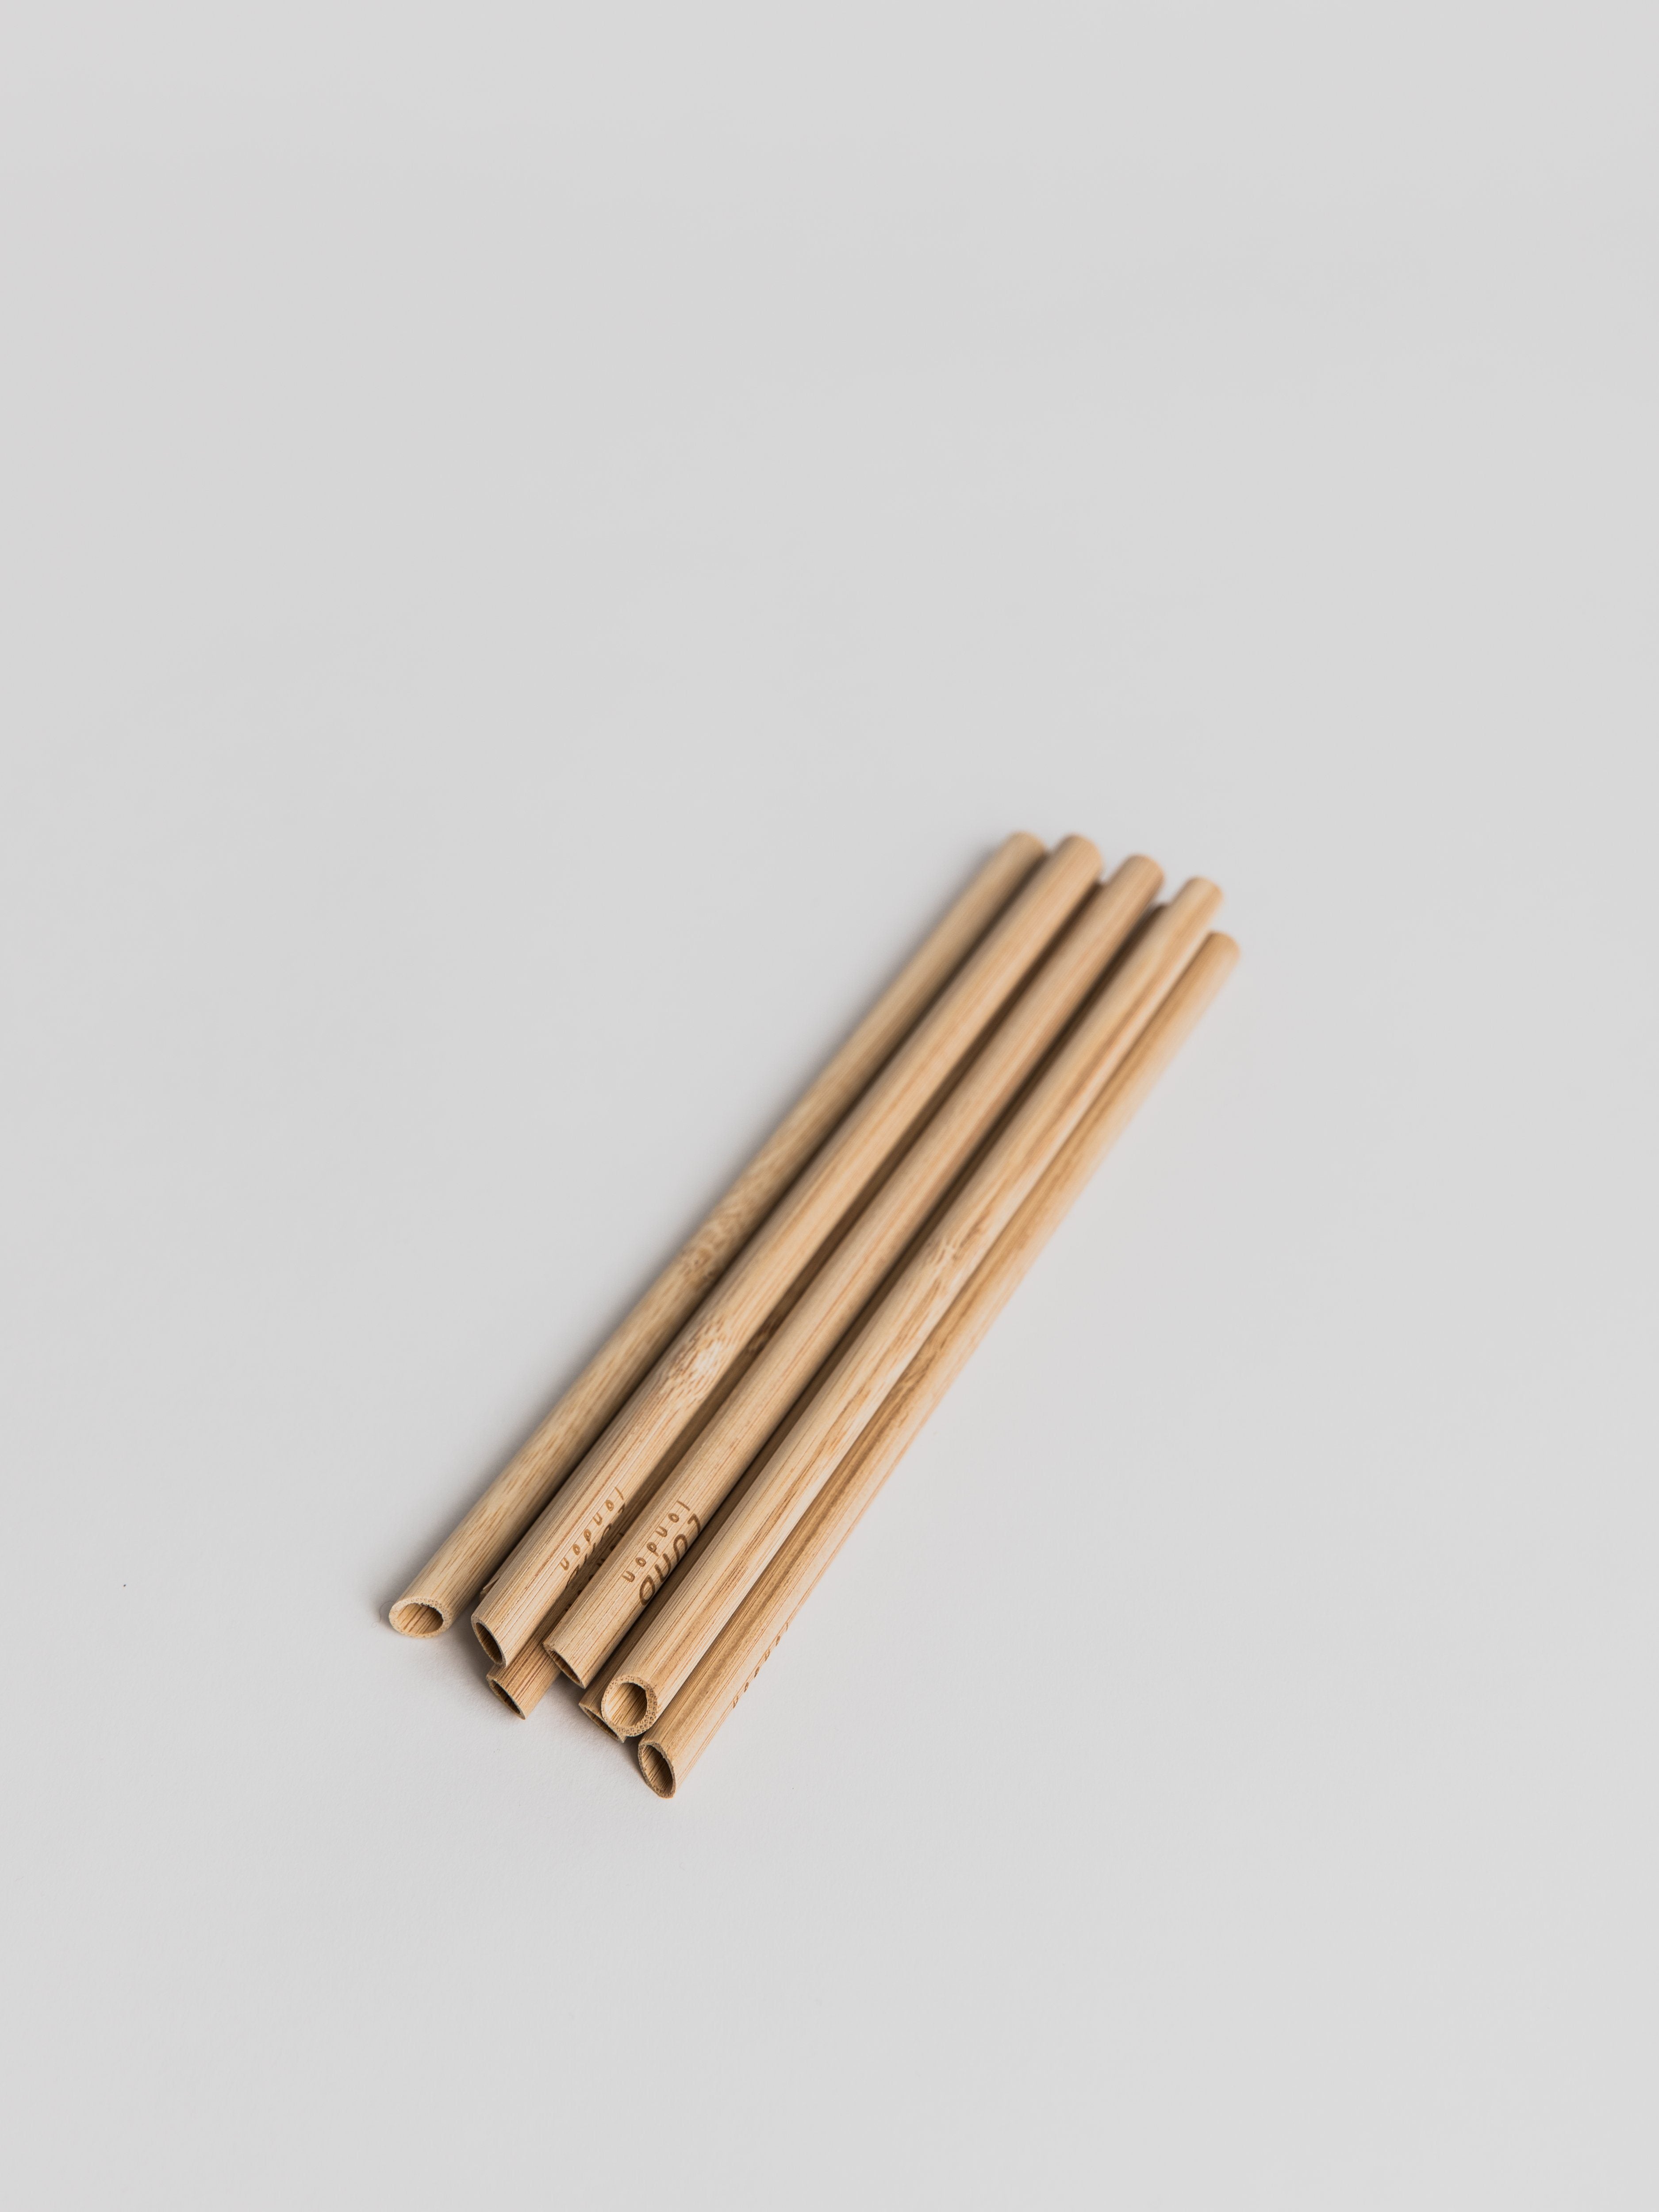 Wooden Straw - Set of 8 Straw LUND London 